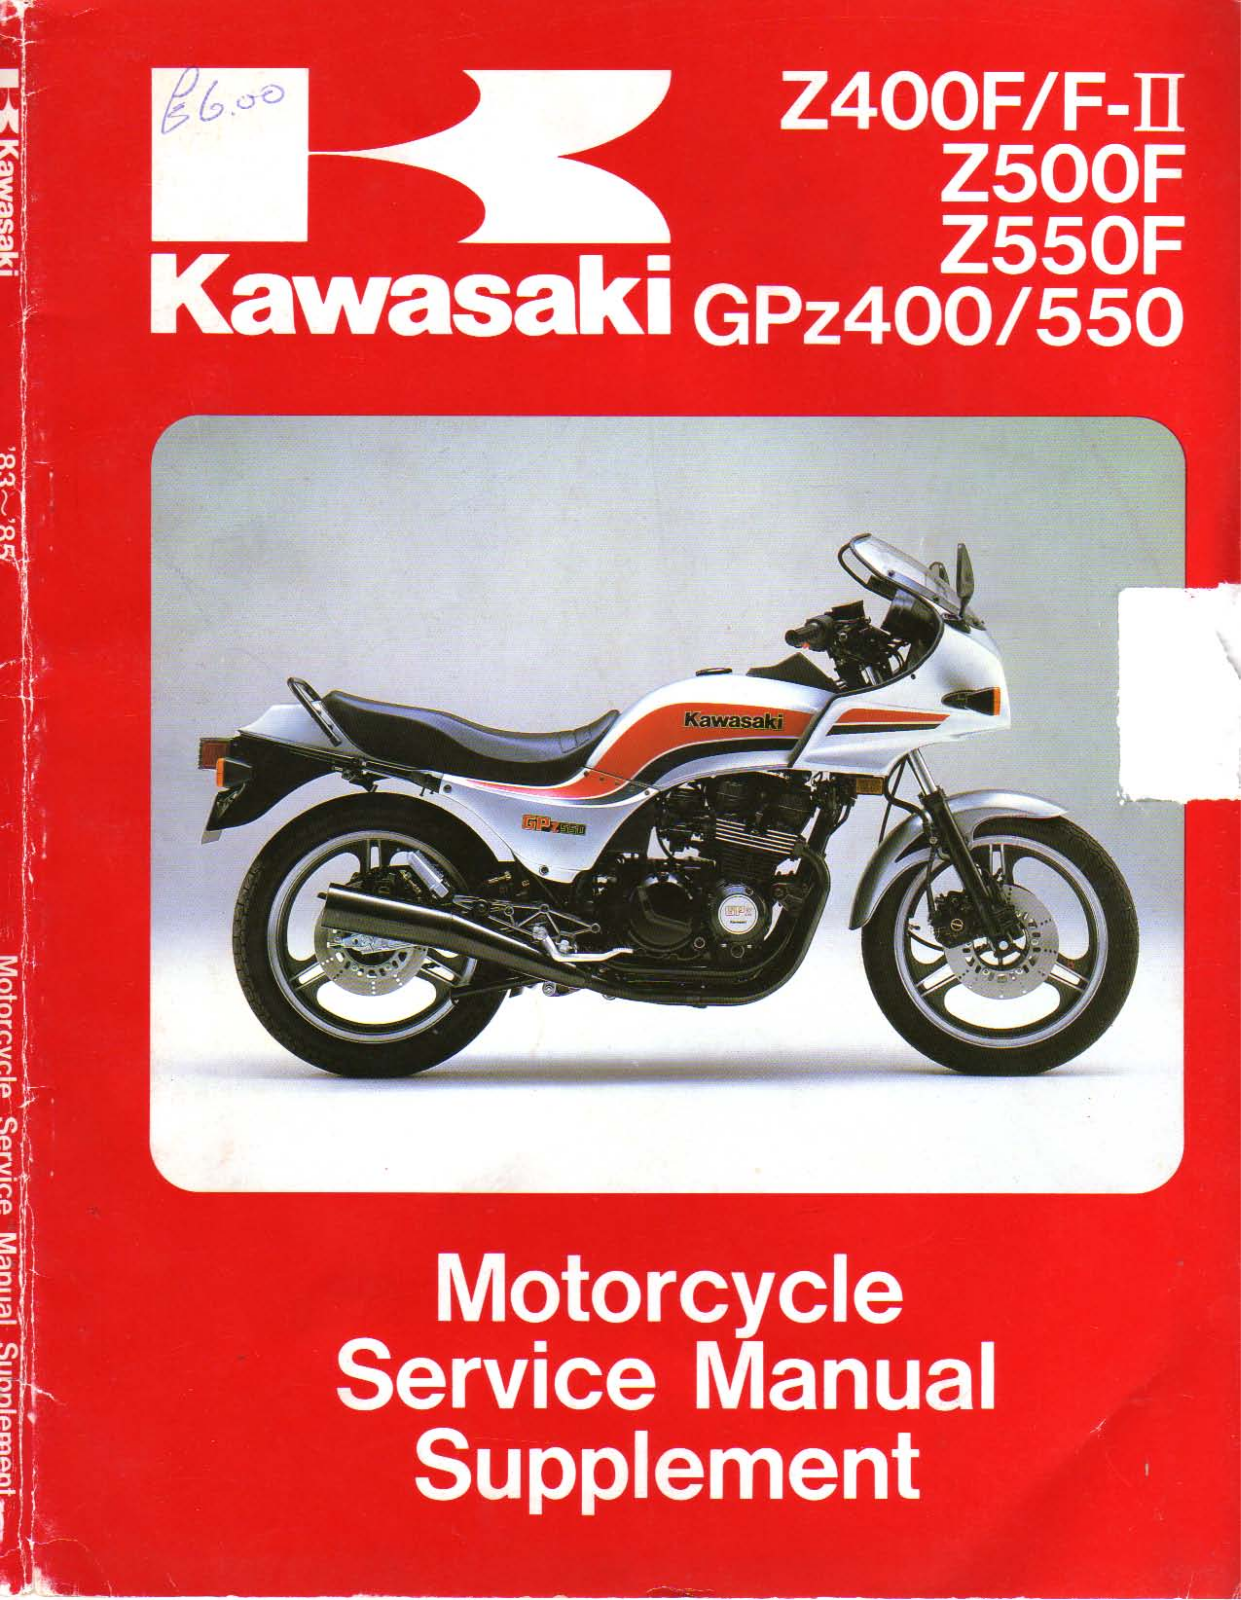 Kawasaki GPZ 400 1983-1985, GPZ 550 1983-1985 Service Manual